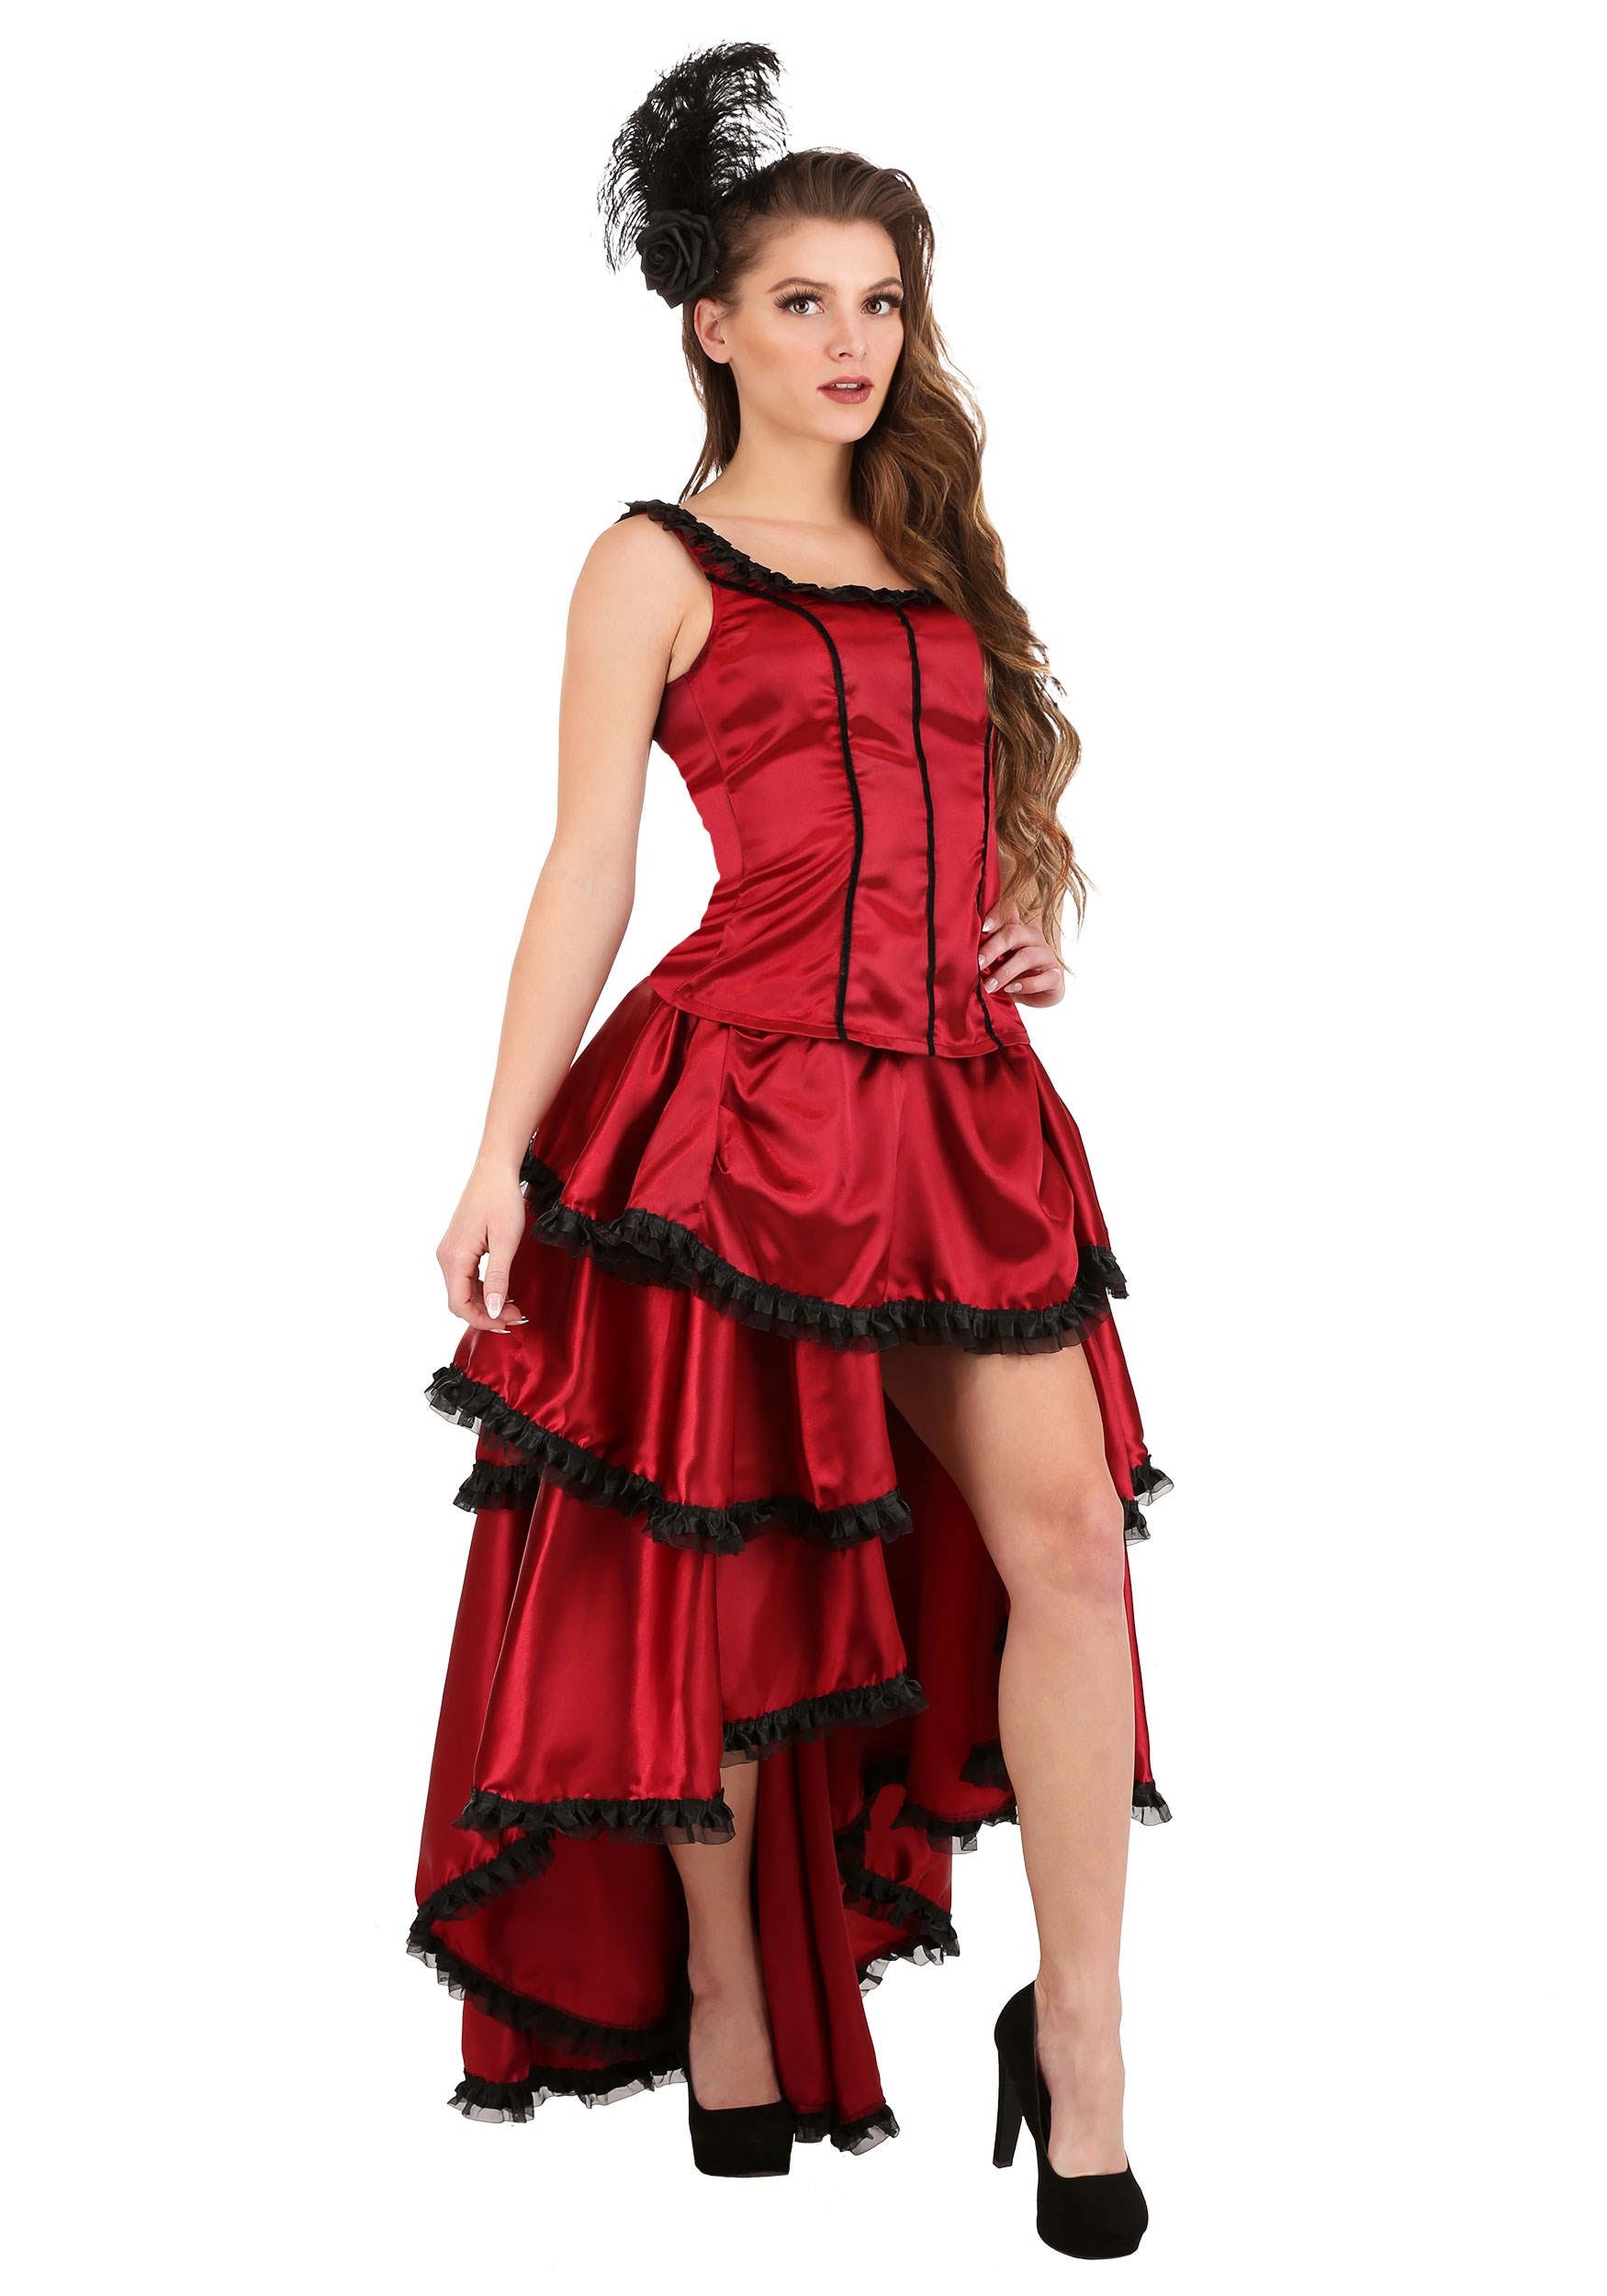 Women's Sultry Saloon Girl Fancy Dress Costume